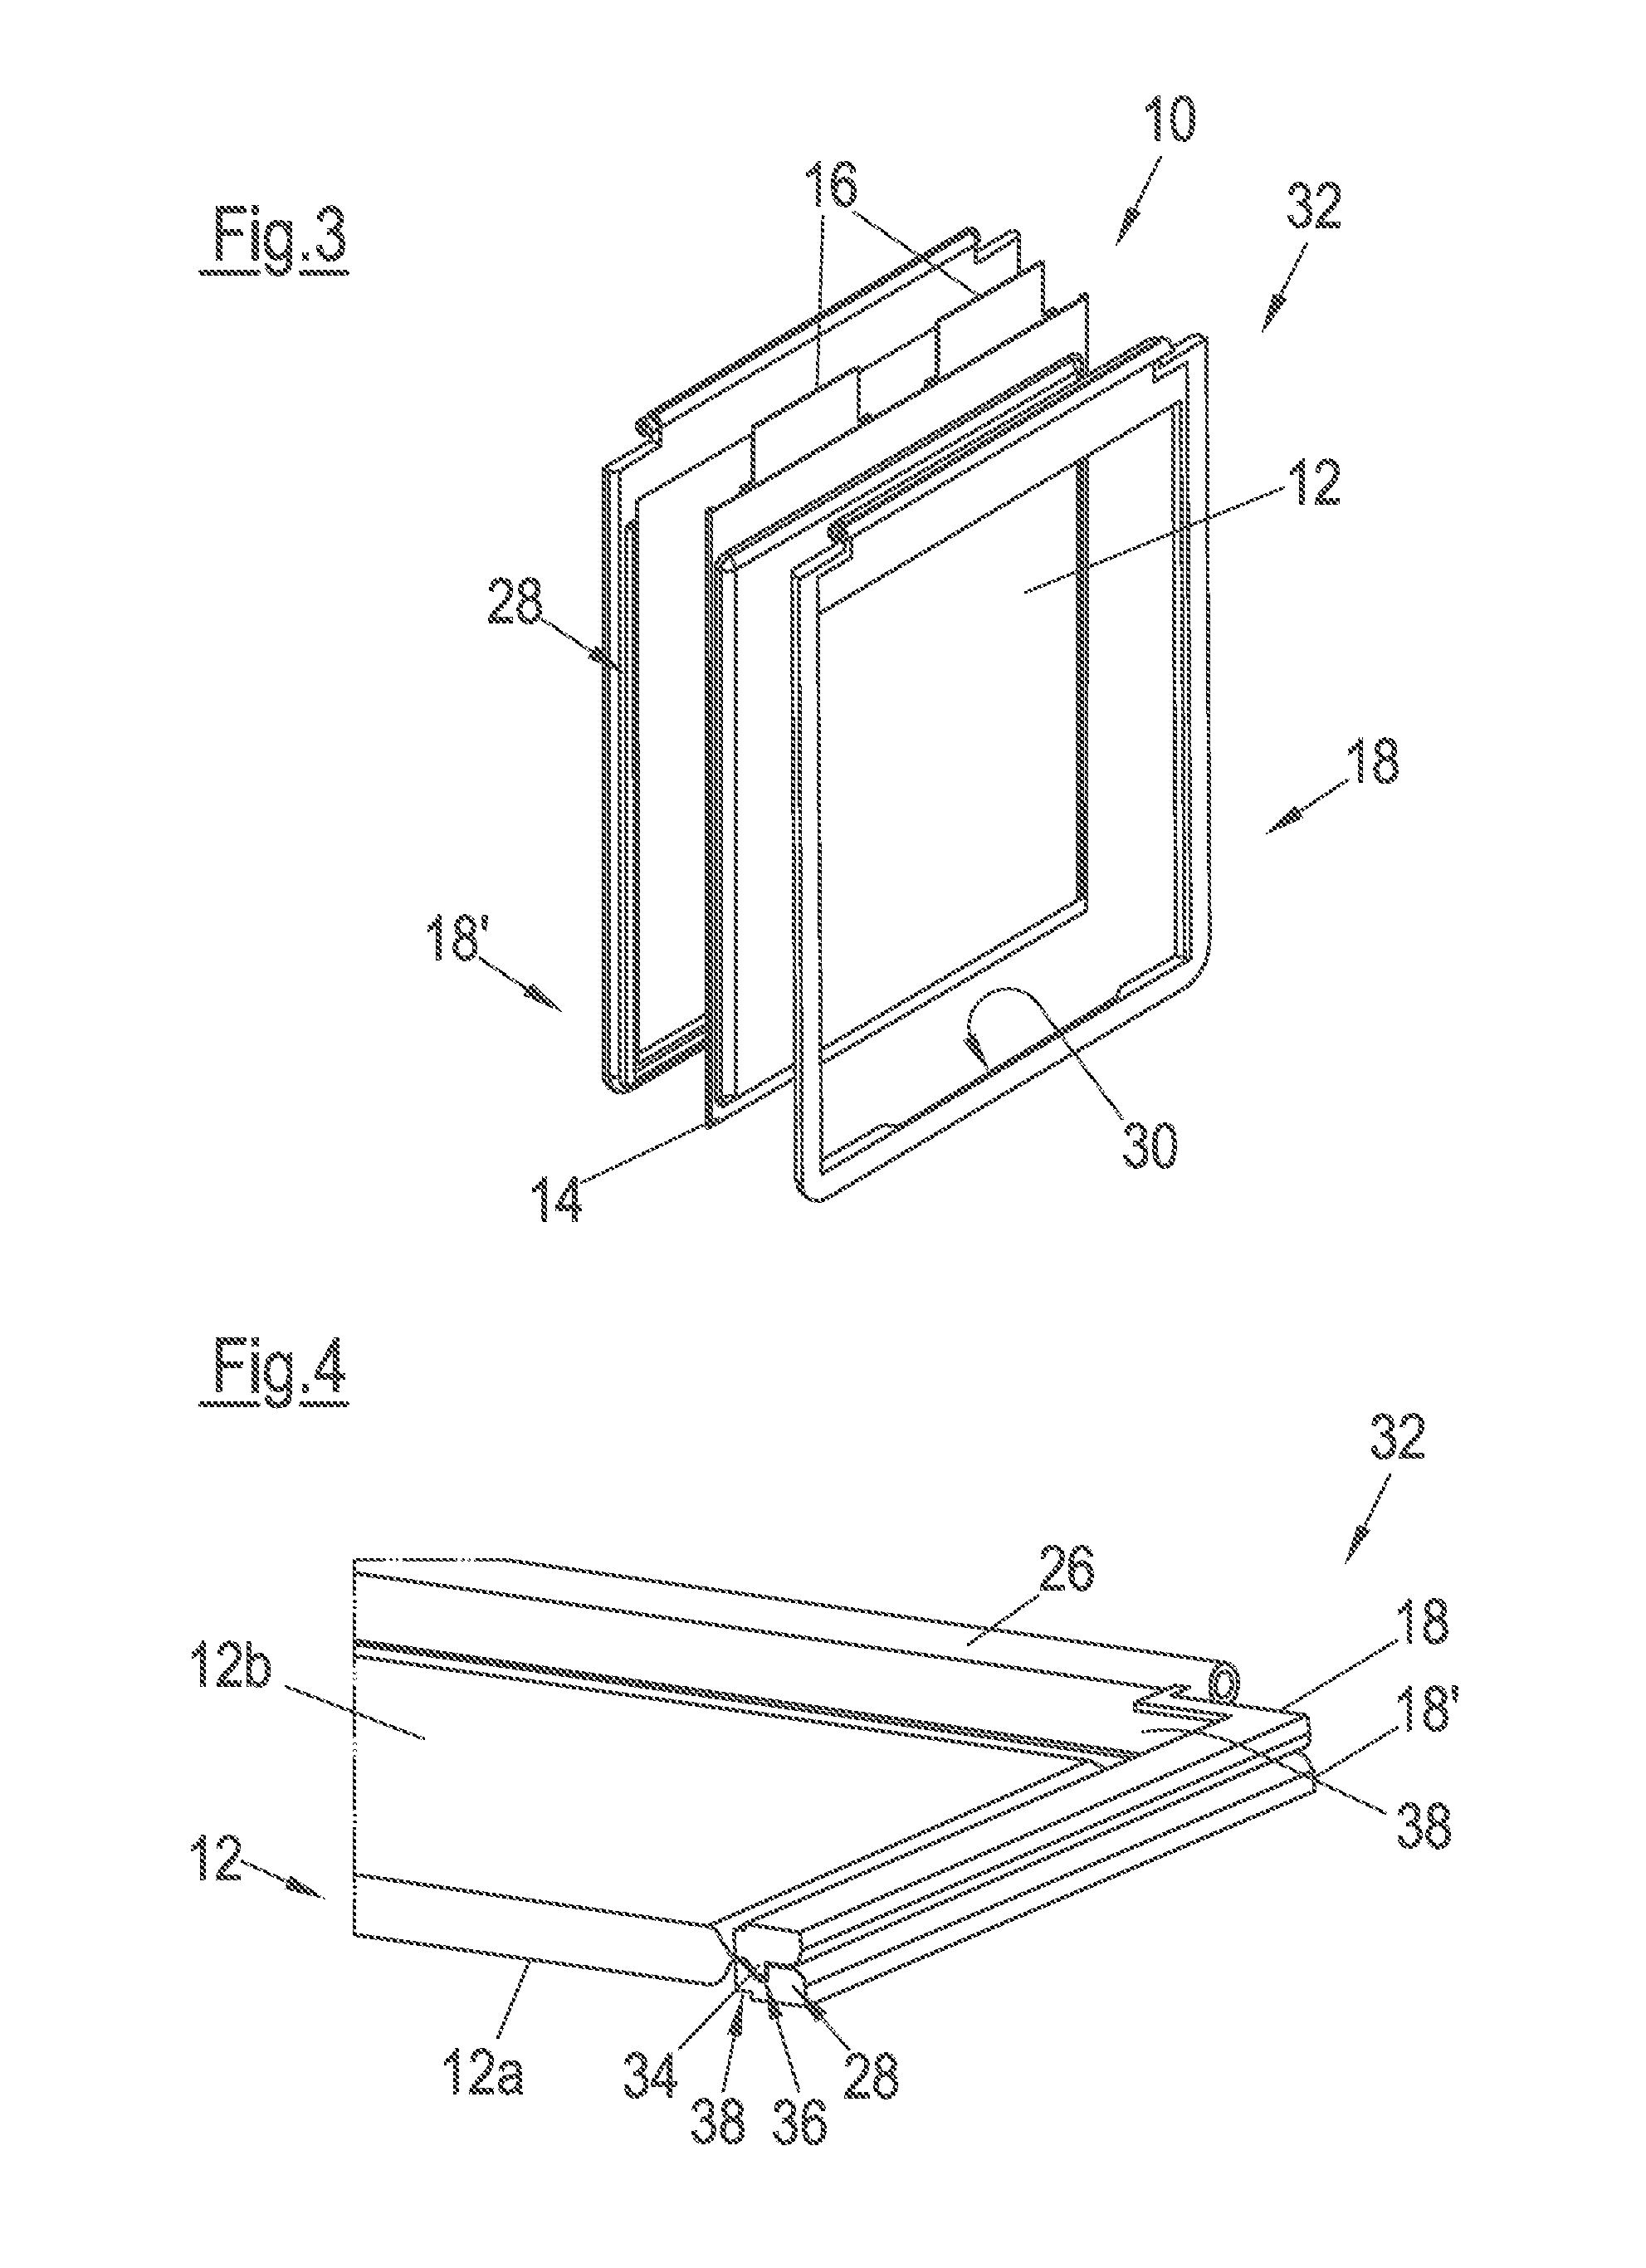 Battery cell arrangement